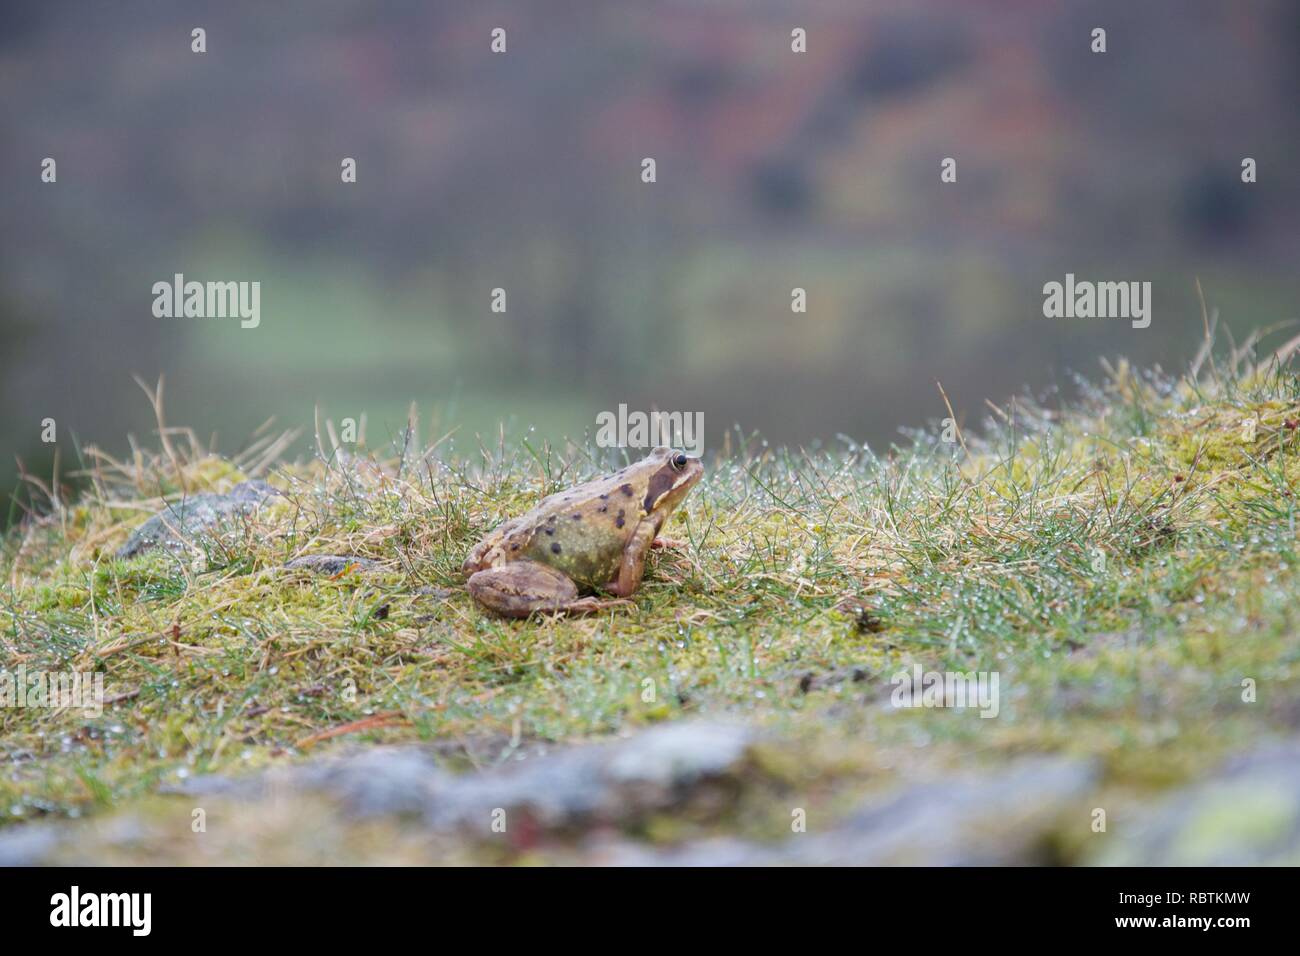 Petit crapaud ou grenouille en herbe humide sur le haut d'un rocher, avec une vallée montagneuse à l'arrière-plan Banque D'Images